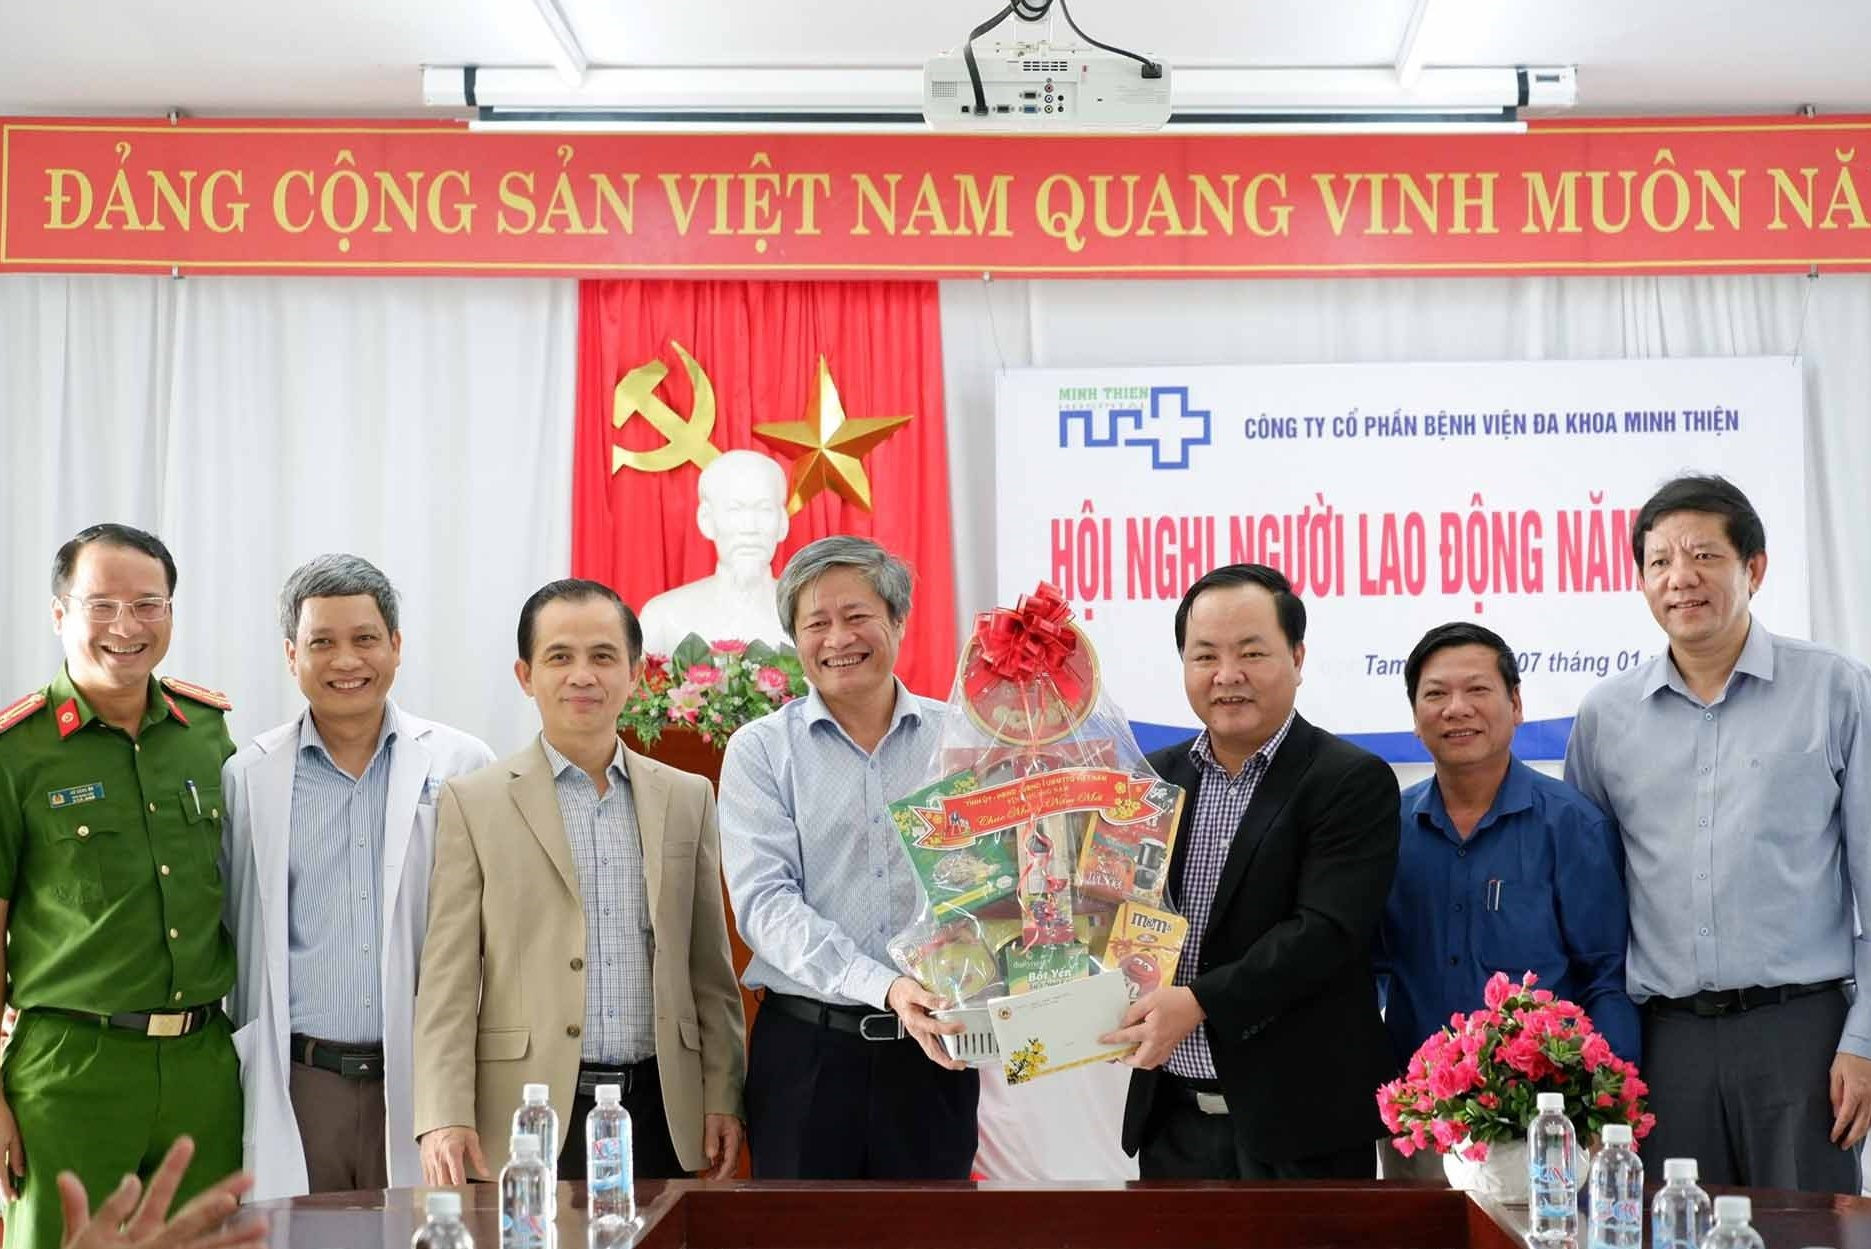 Đồng chí Nguyễn Hồng Quang cùng đoàn đại diện các sở ngành thăm và chúc tết BV Đa khoa Minh Thiện. Ảnh: X.H